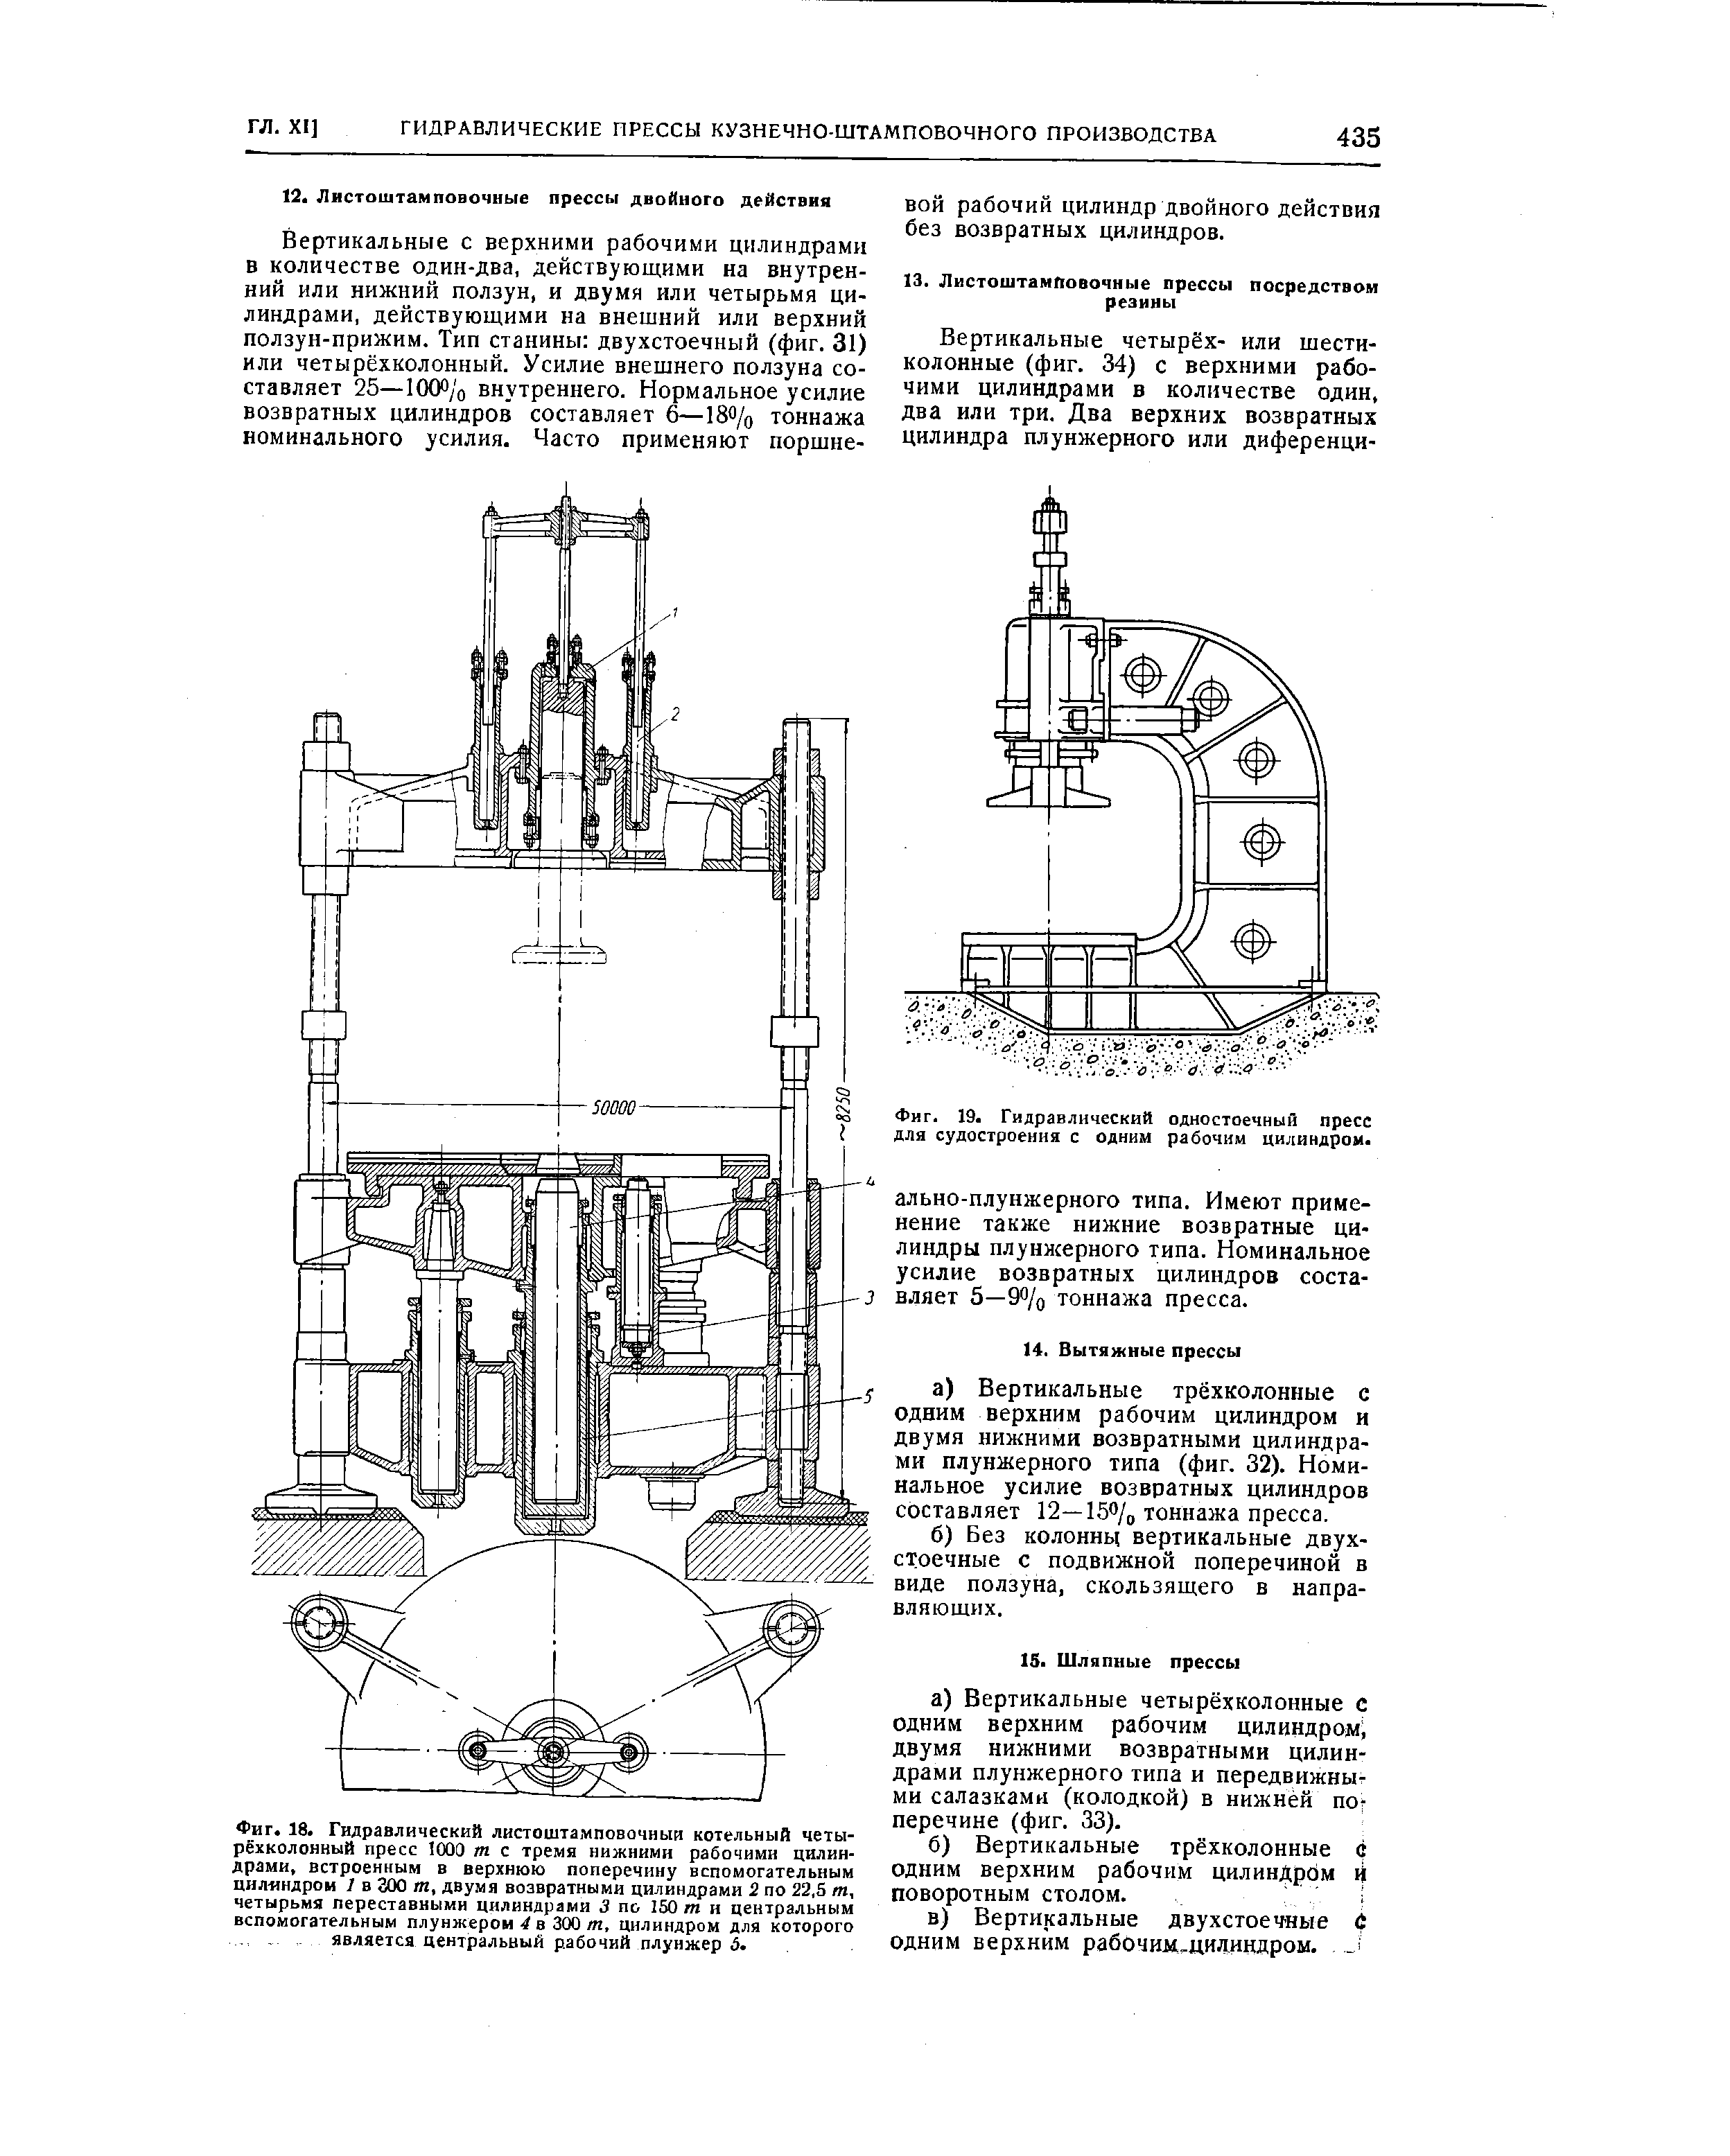 Фиг. 19 Гидравлический одностоечный пресс для судостроения с одним рабочим цилиндром 
